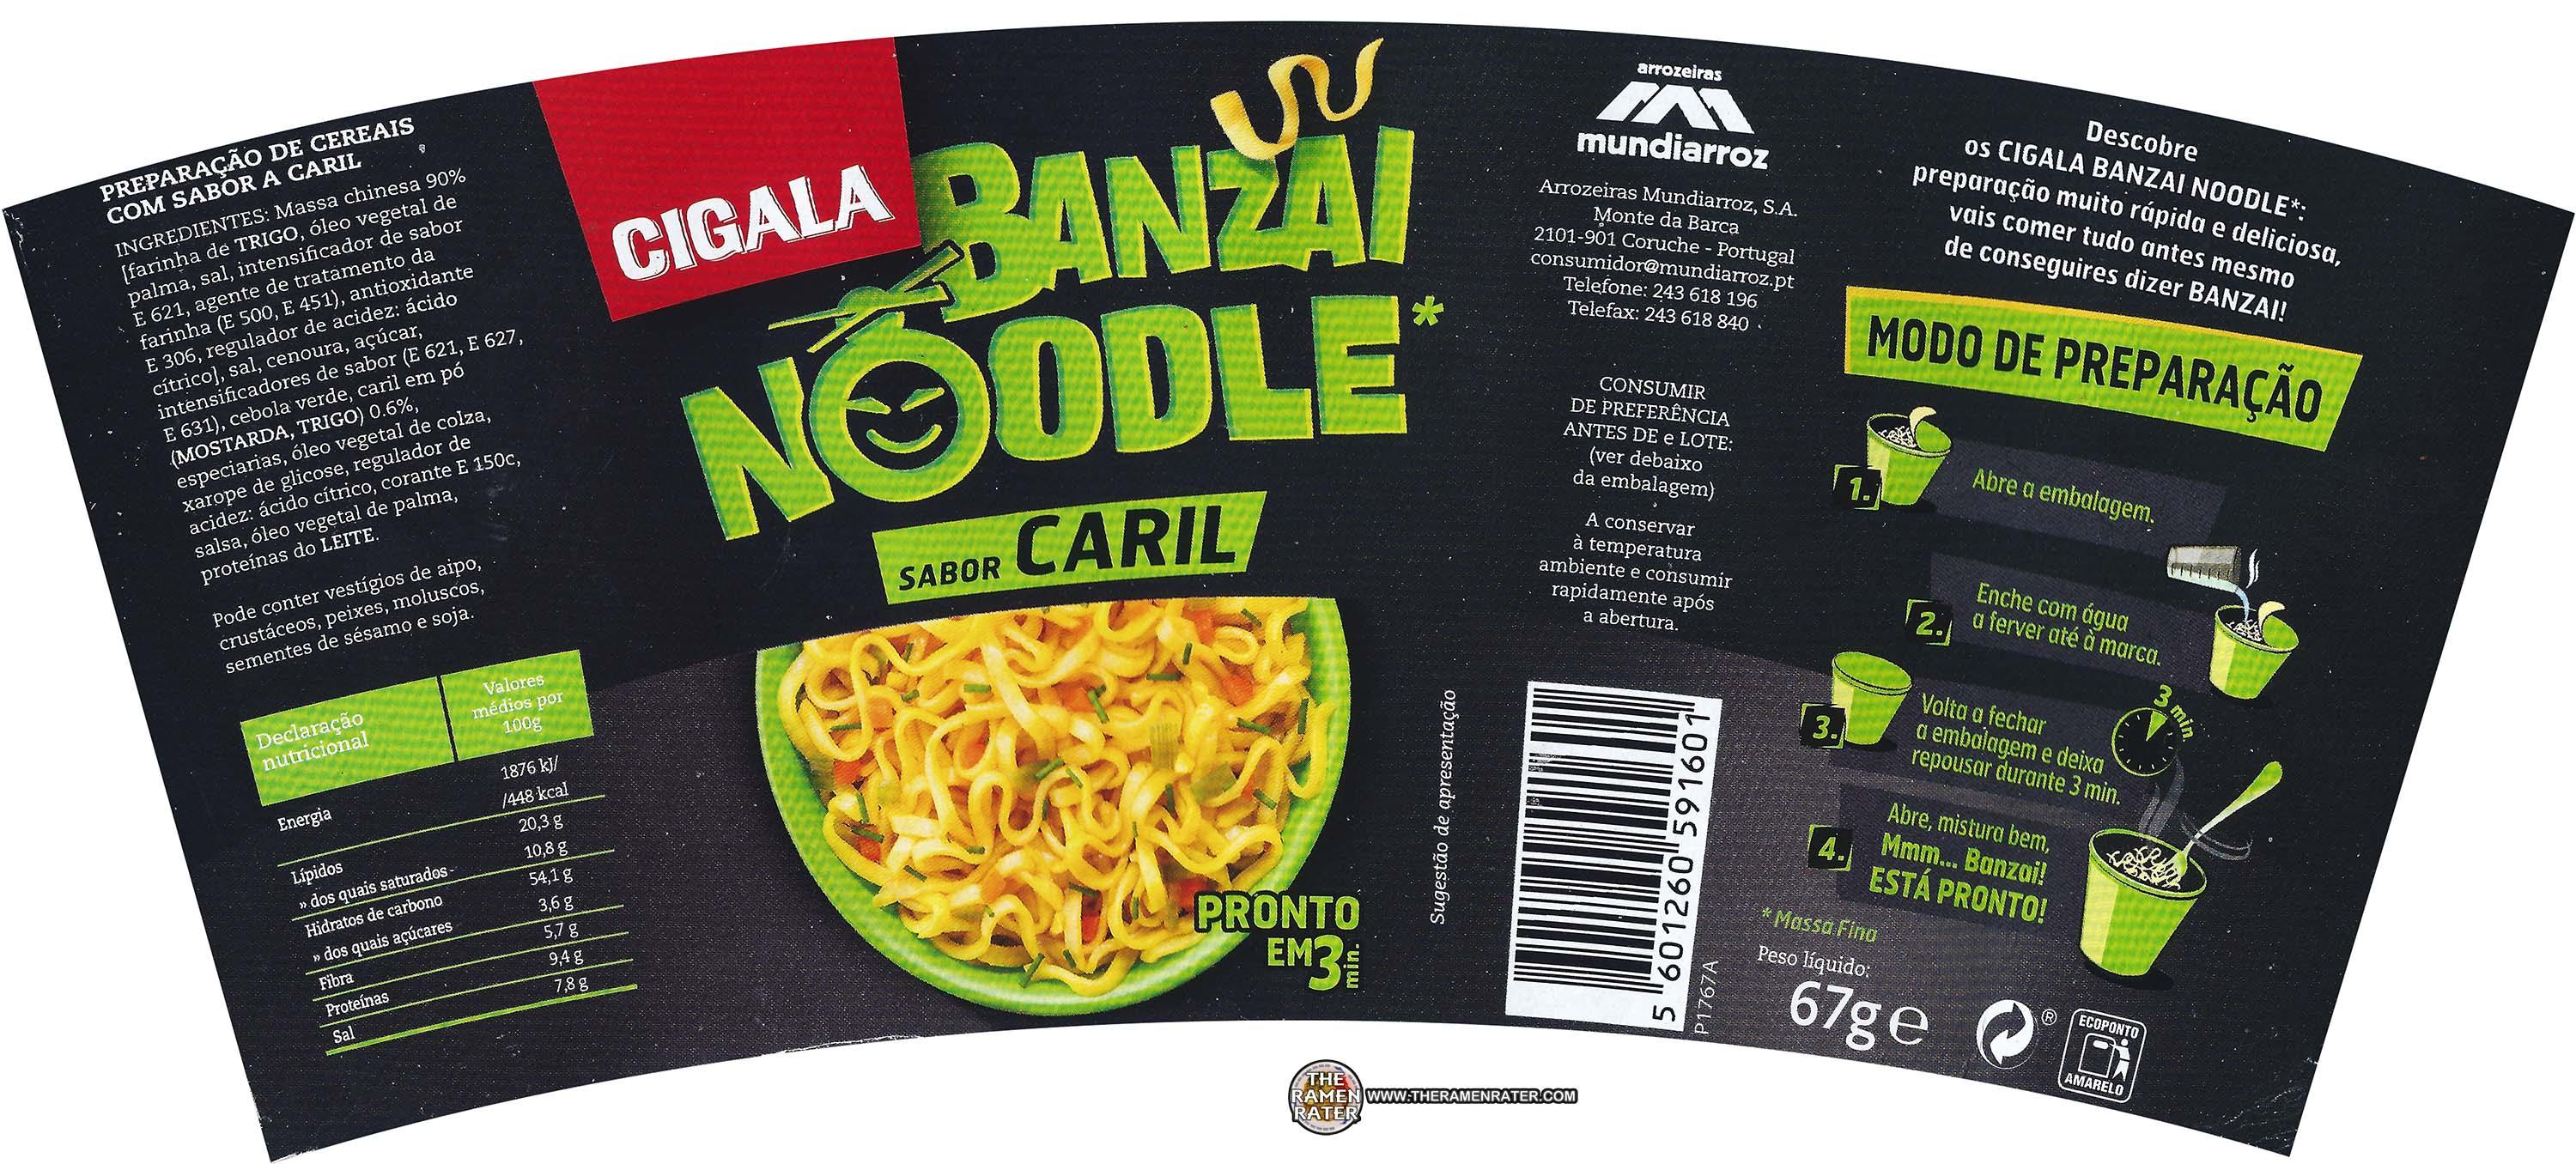 2718: Banzai Instant Noodles Tom Yam Kung Shrimp Flavour - THE RAMEN RATER